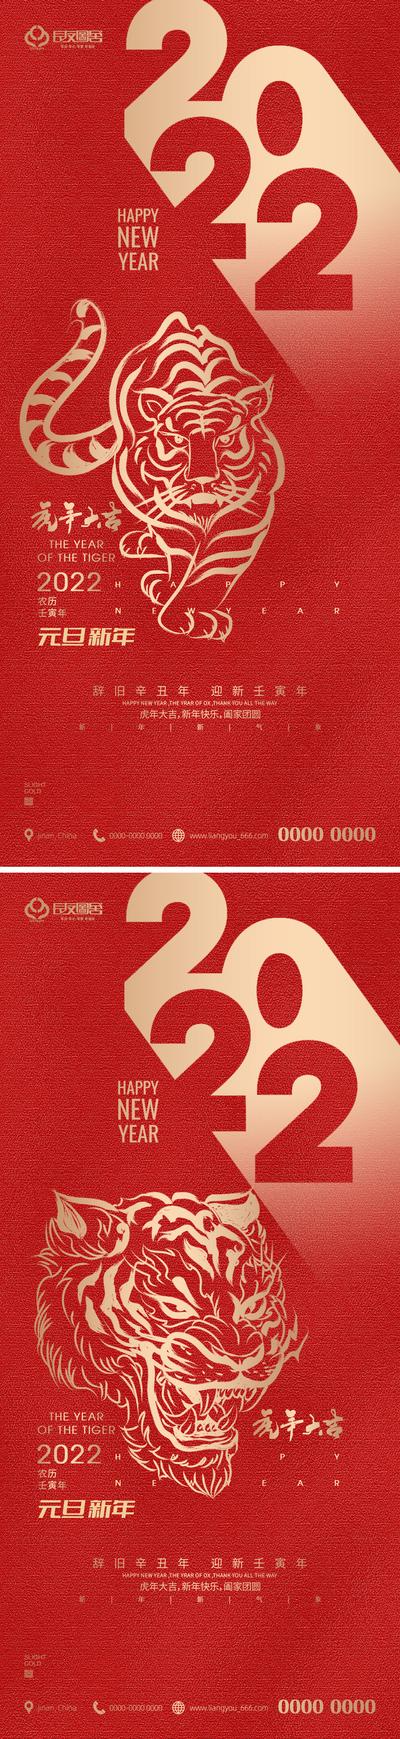 南门网 海报 公历节日 2022 虎年 新年 元旦 剪纸 红金